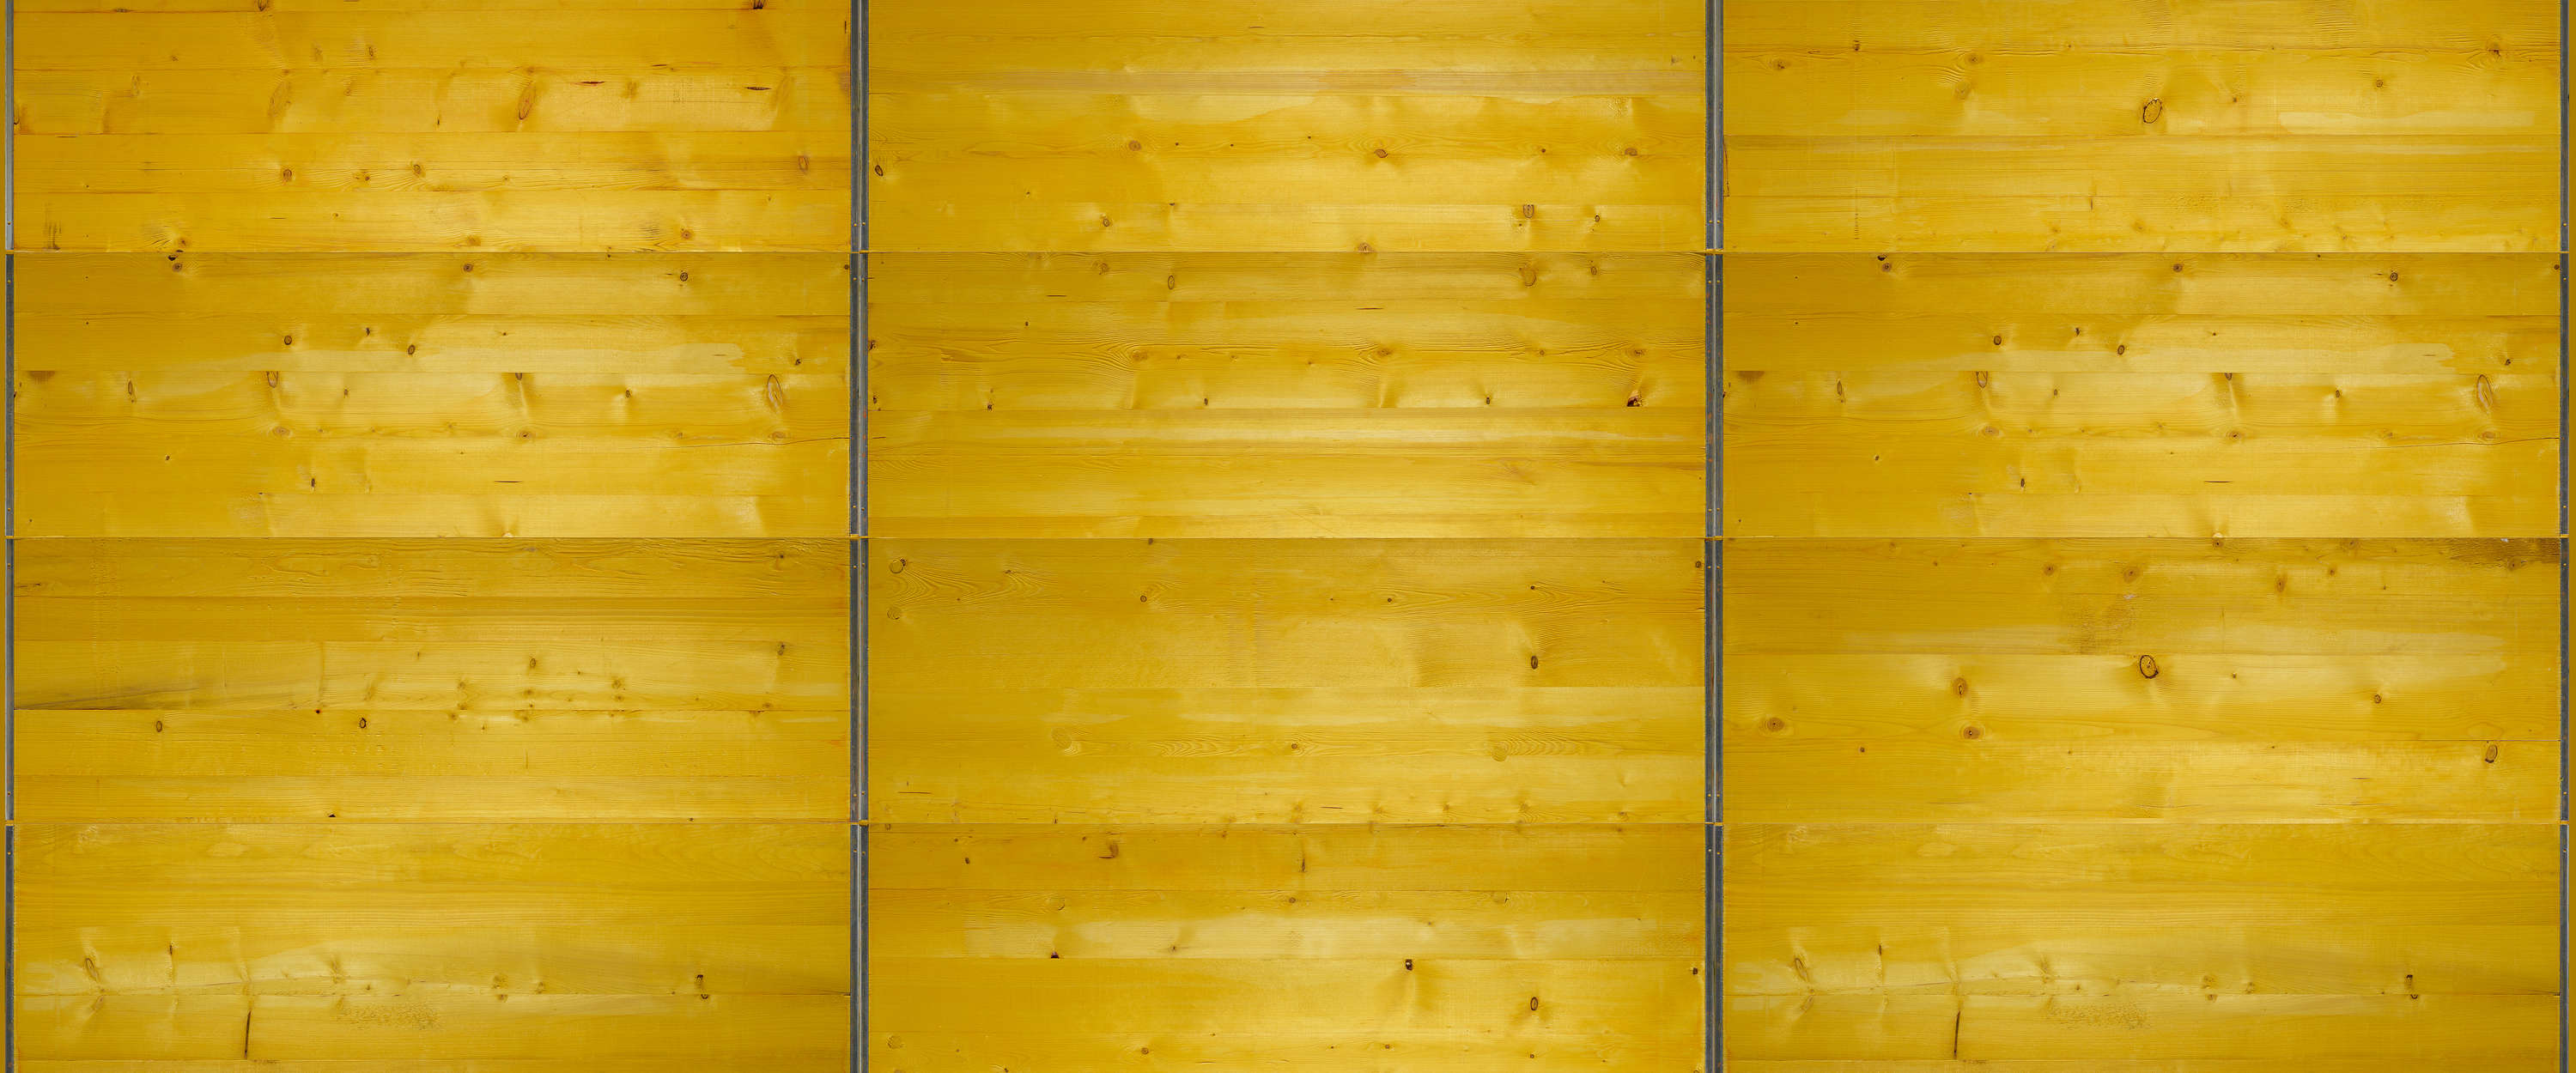             Cassaforma per tavole murali in giallo
        